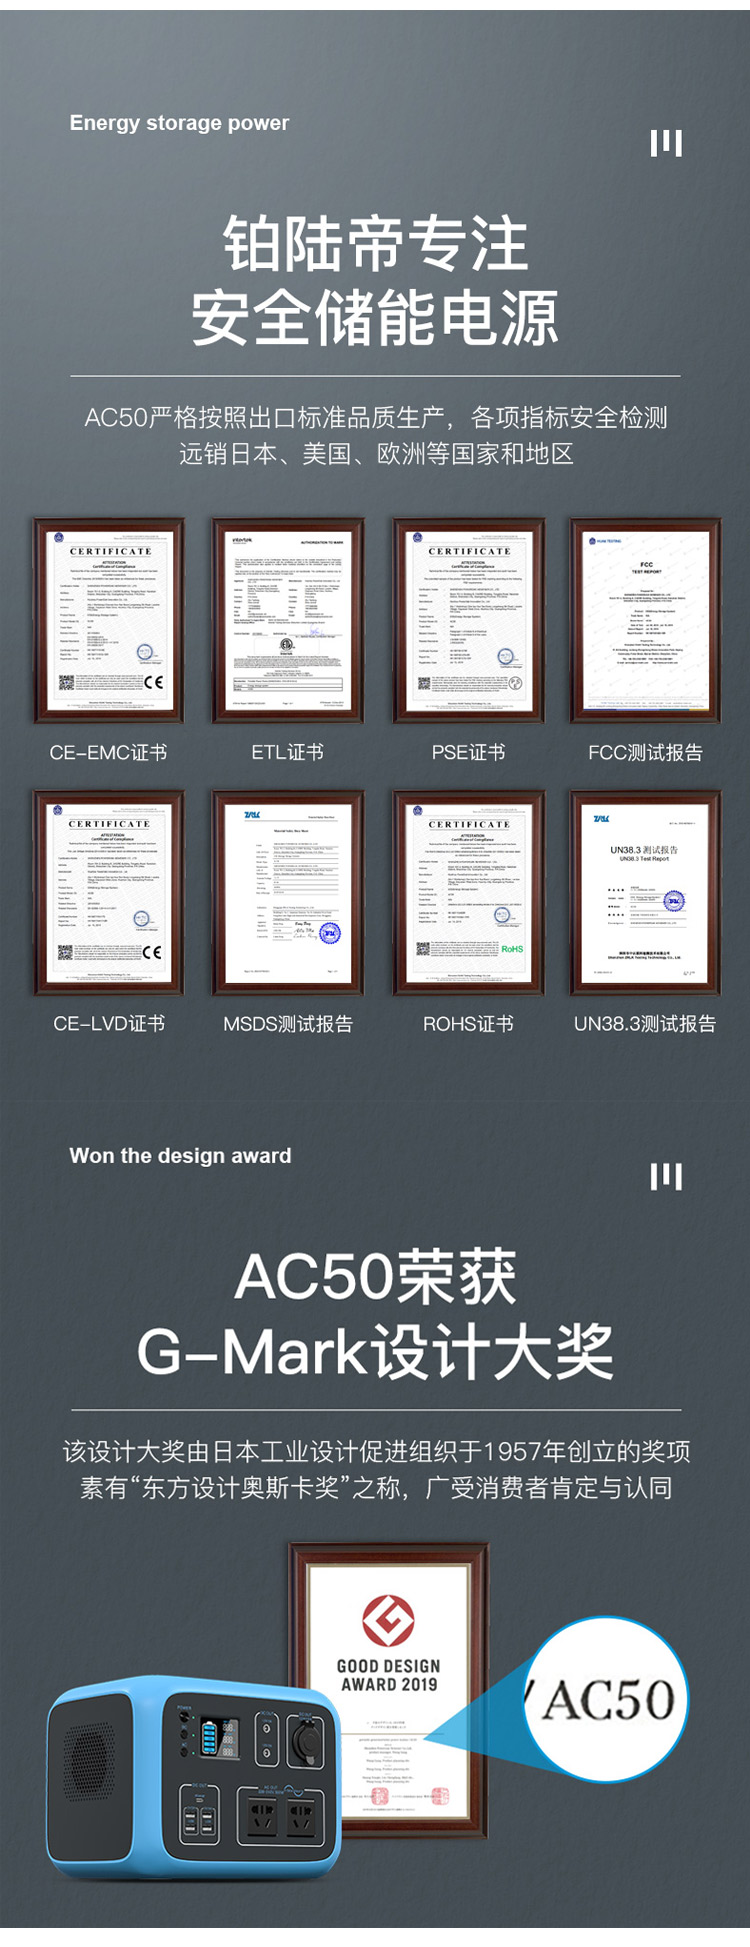 铂陆帝户外电源AC50产品详情图_03.jpg